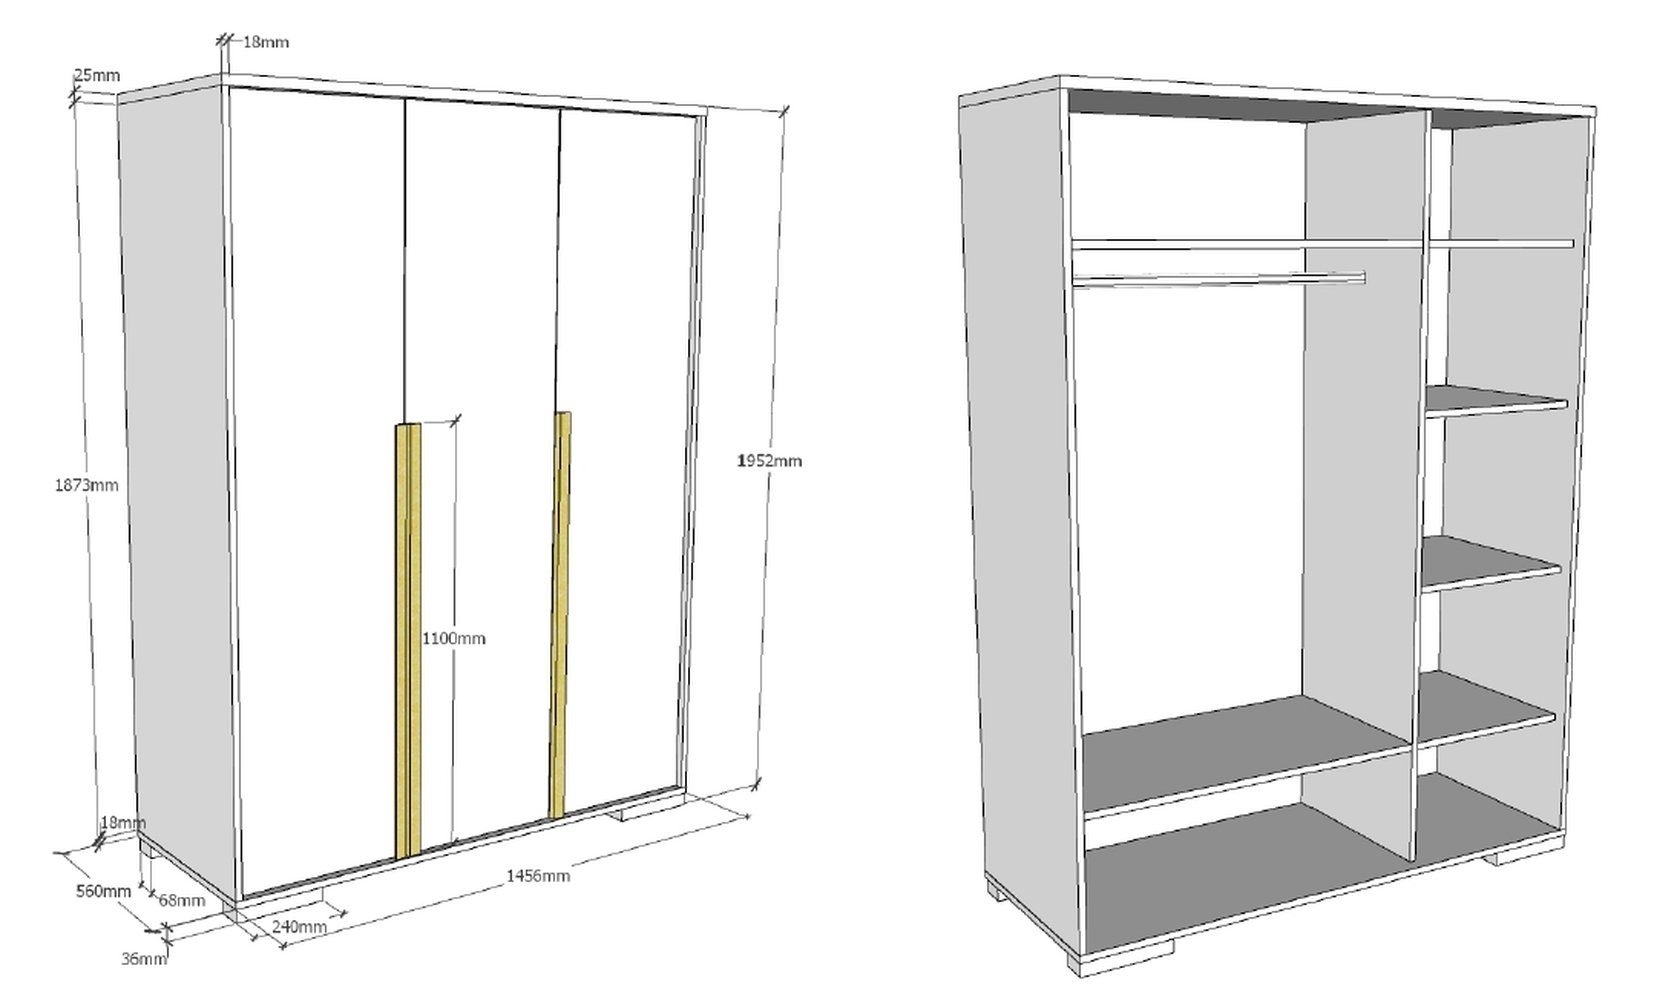 cm 3 LONDON mit möbelando Kleiderschrank Weiß/Buche Abmessungen Türen. (BxHxT) in 145,6x195,2x56